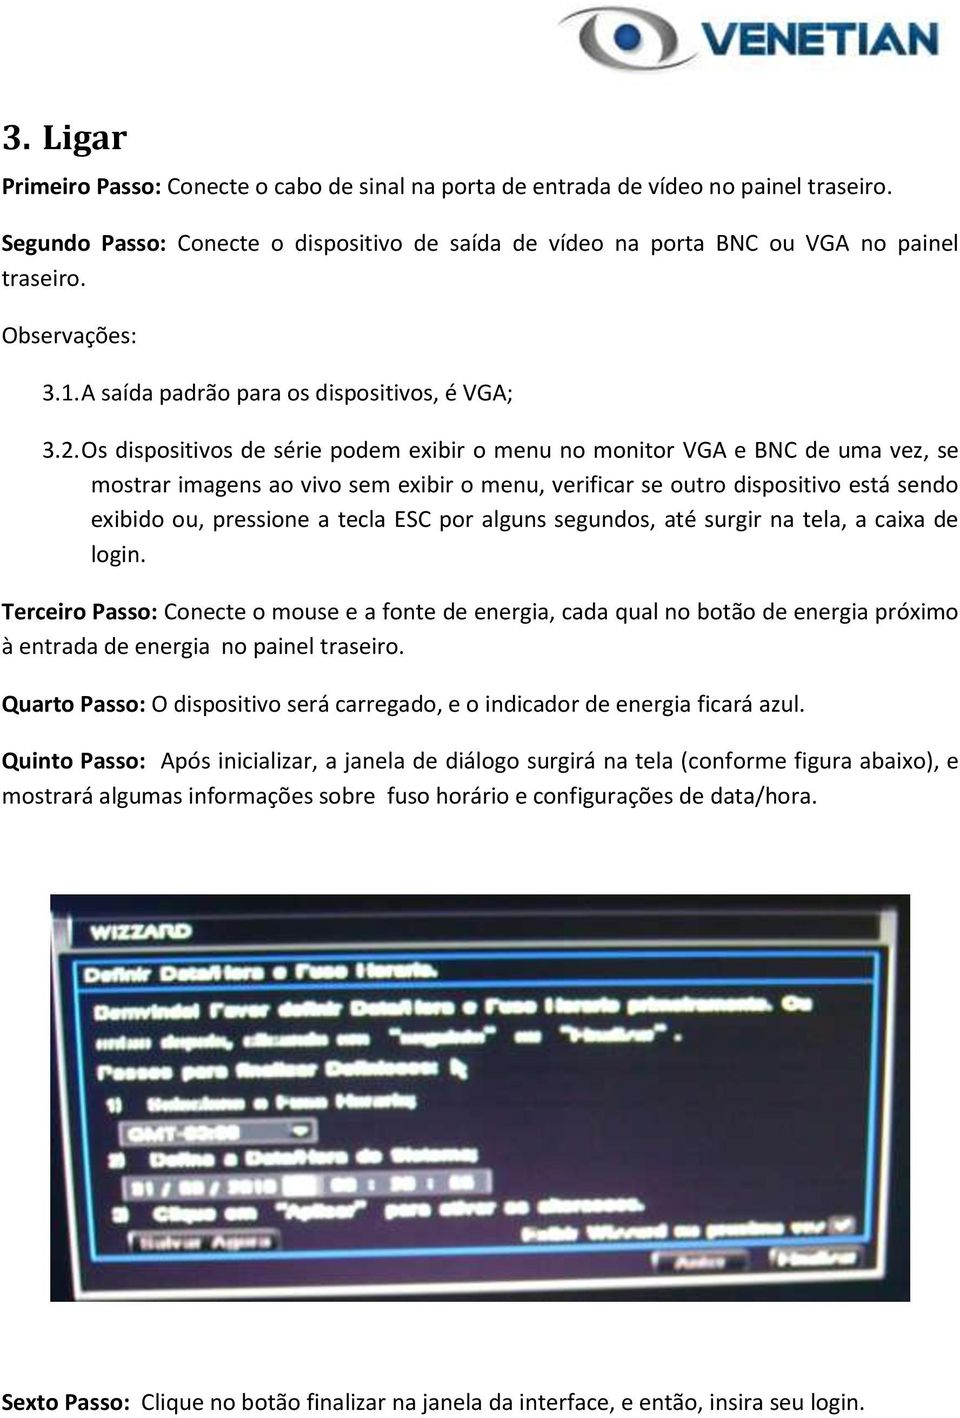 Os dispositivos de série podem exibir o menu no monitor VGA e BNC de uma vez, se mostrar imagens ao vivo sem exibir o menu, verificar se outro dispositivo está sendo exibido ou, pressione a tecla ESC